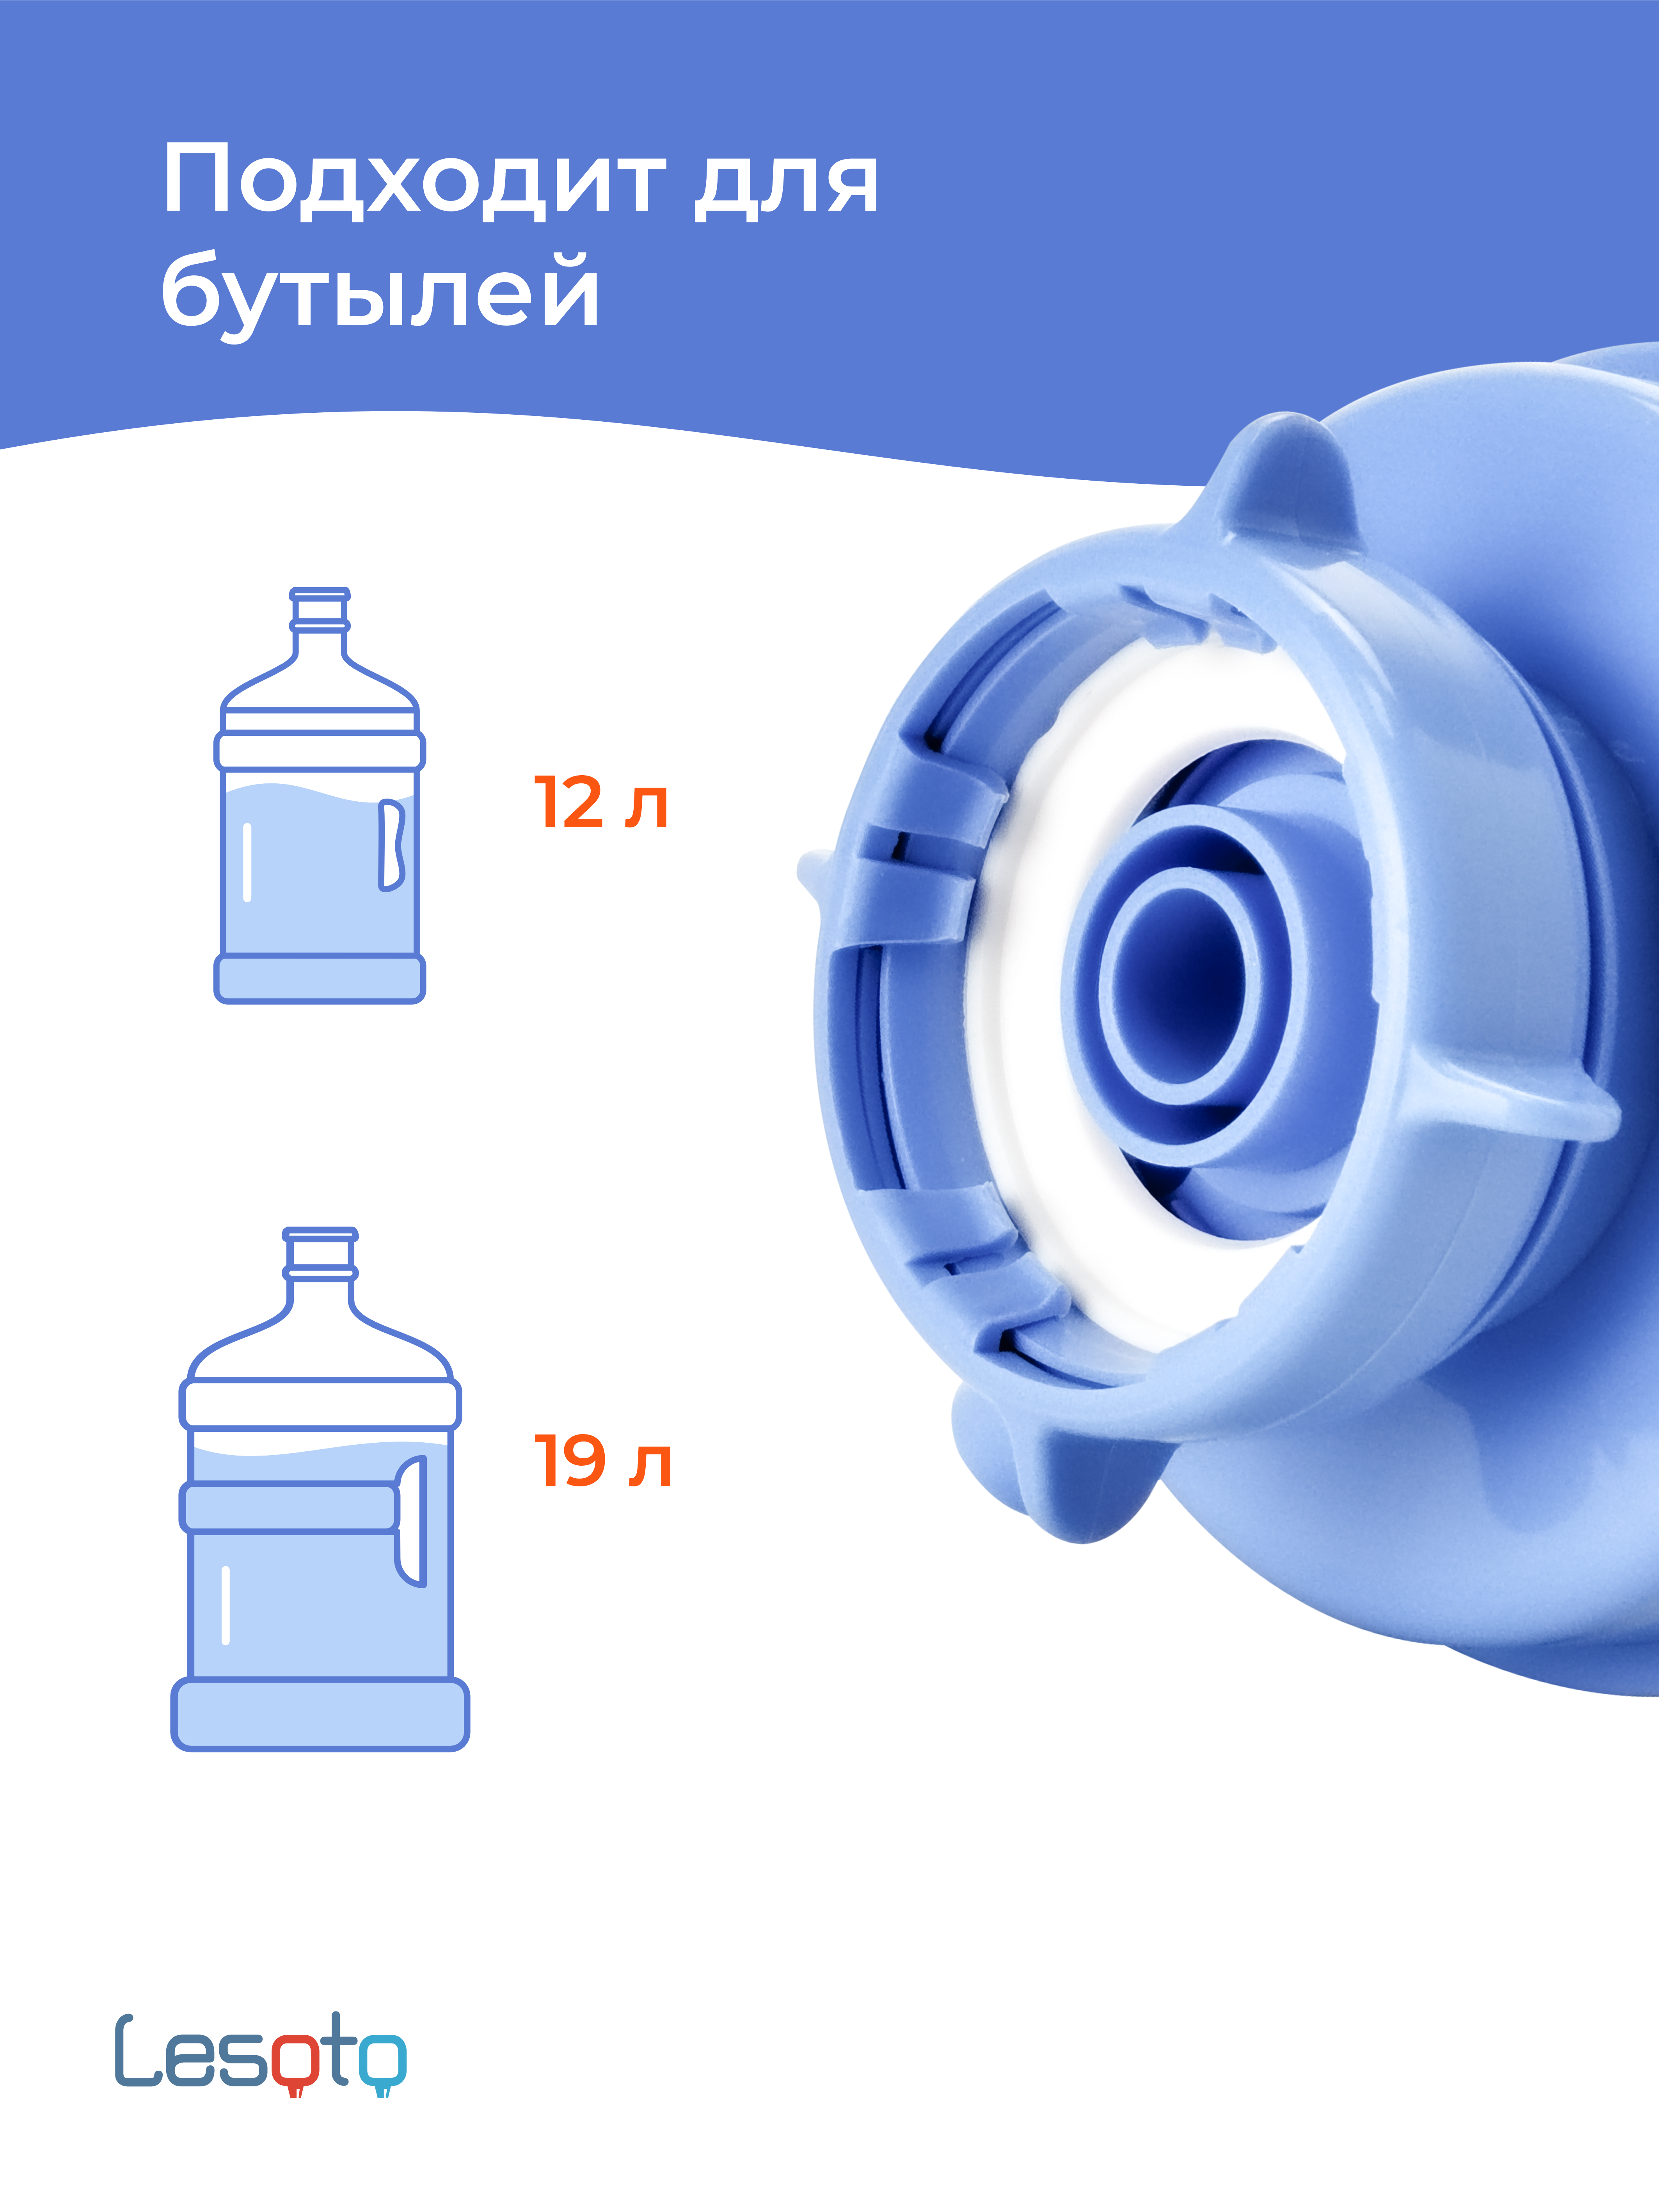 Помпа для воды ручная механическая LESOTO Сomfort водяной насос диспенсер ручной дозатор откачка из бутылок для воды 19 и 12 л не электрическая